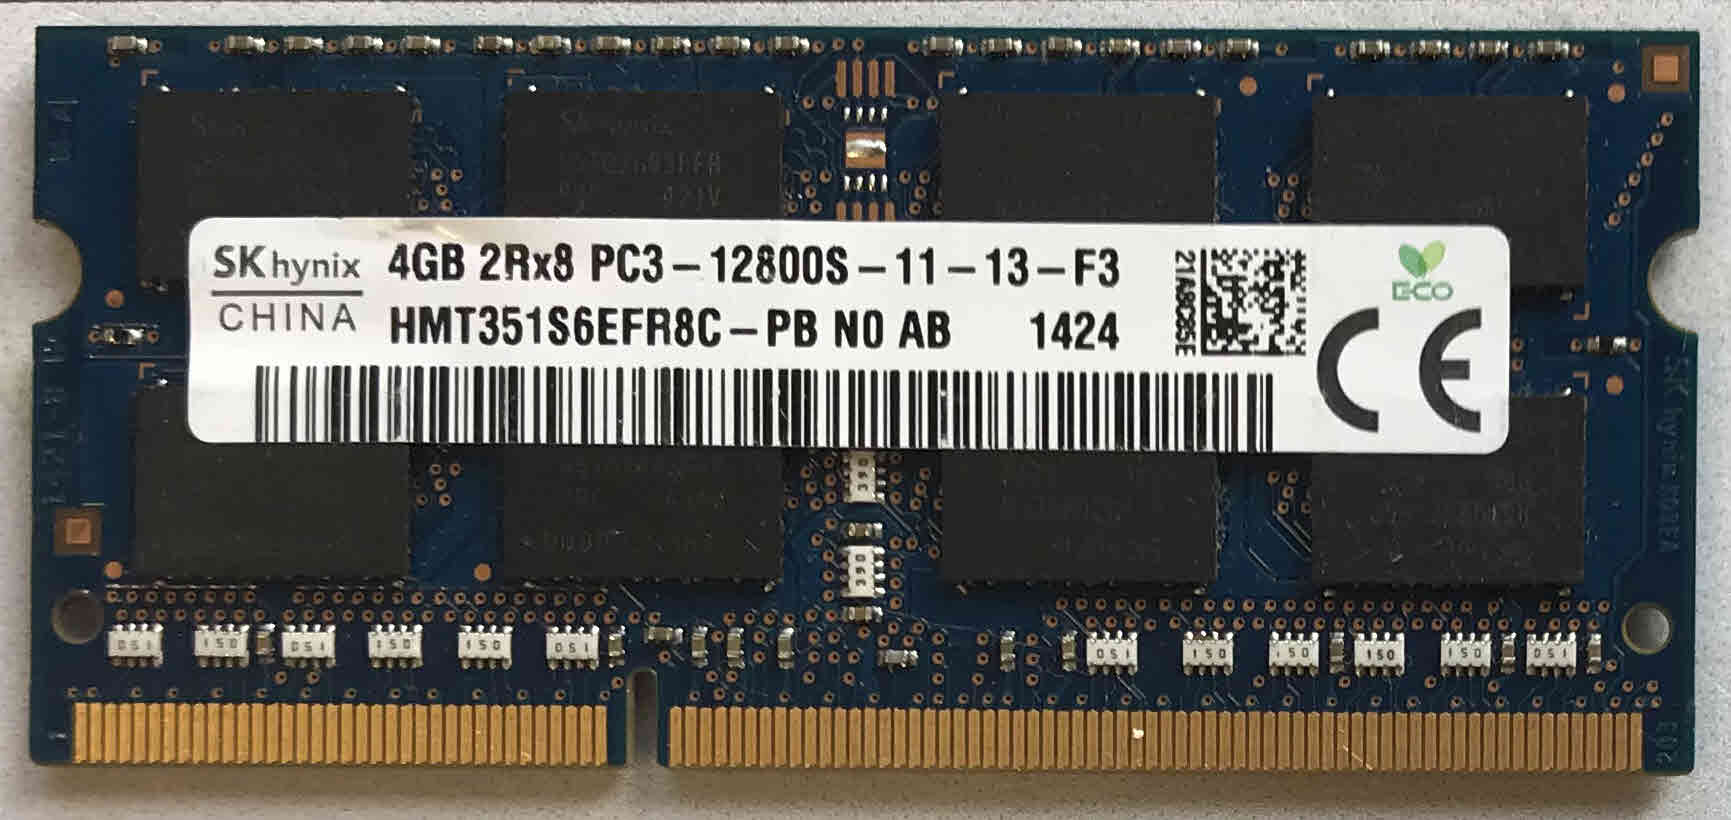 4GB 2Rx8 PC3-12800S-11-13-F3 SKhynix